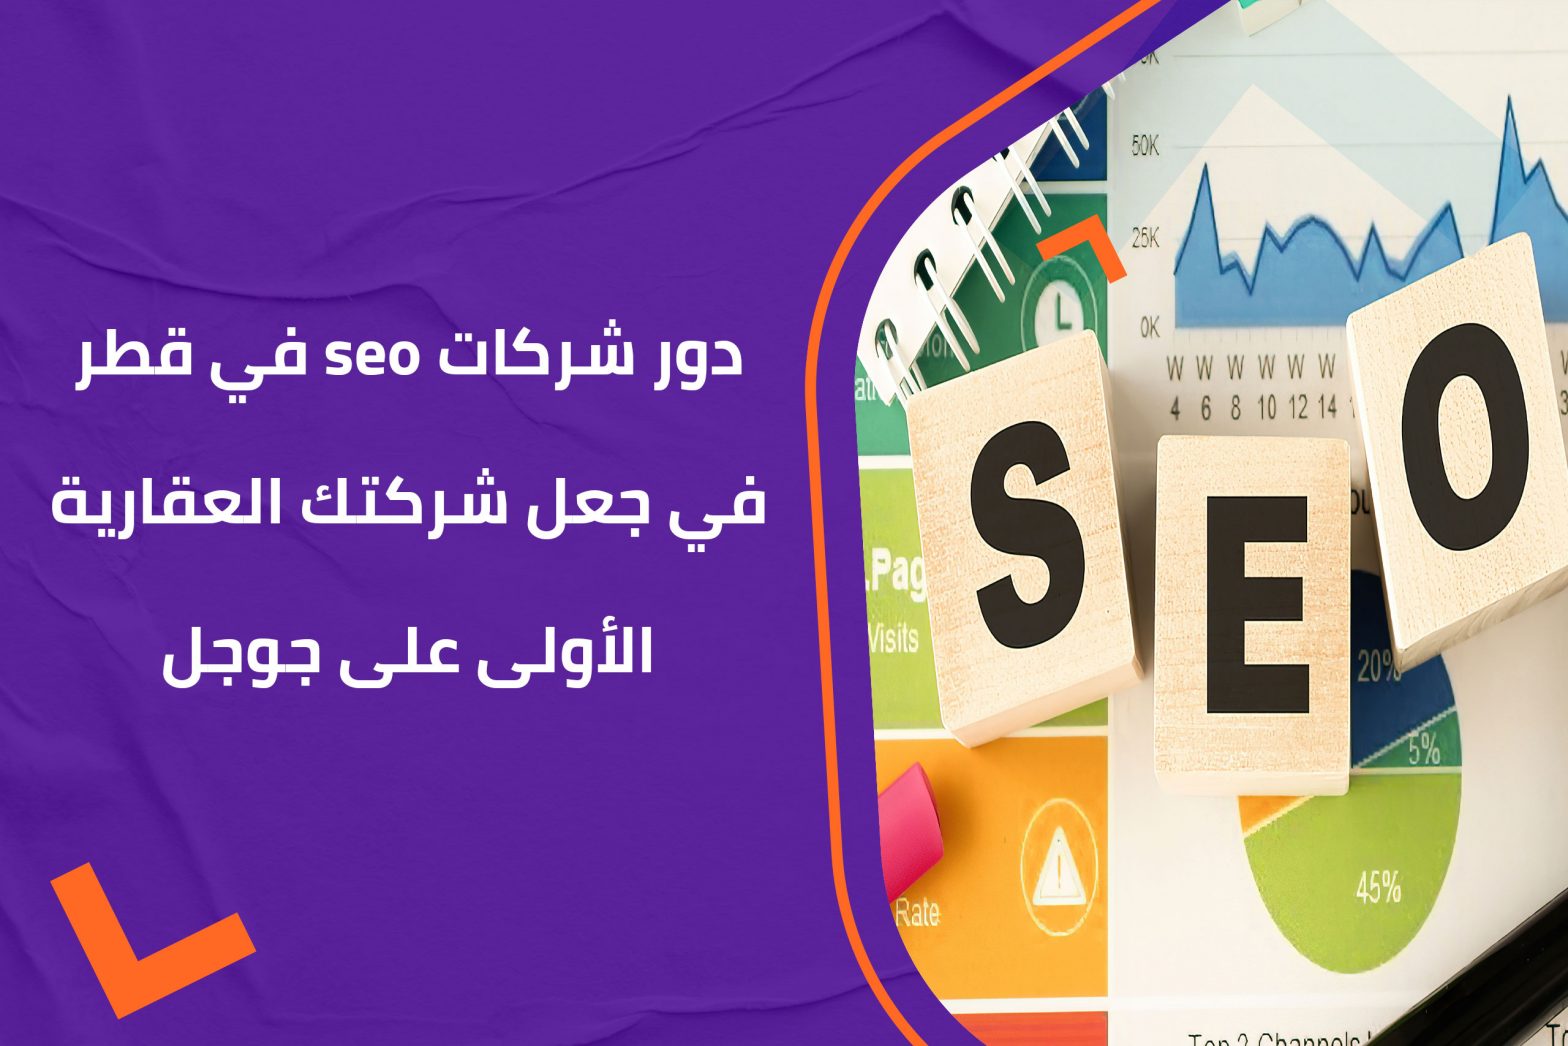 دور شركات seo في قطر في جعل شركتك العقارية الأولى على جوجل